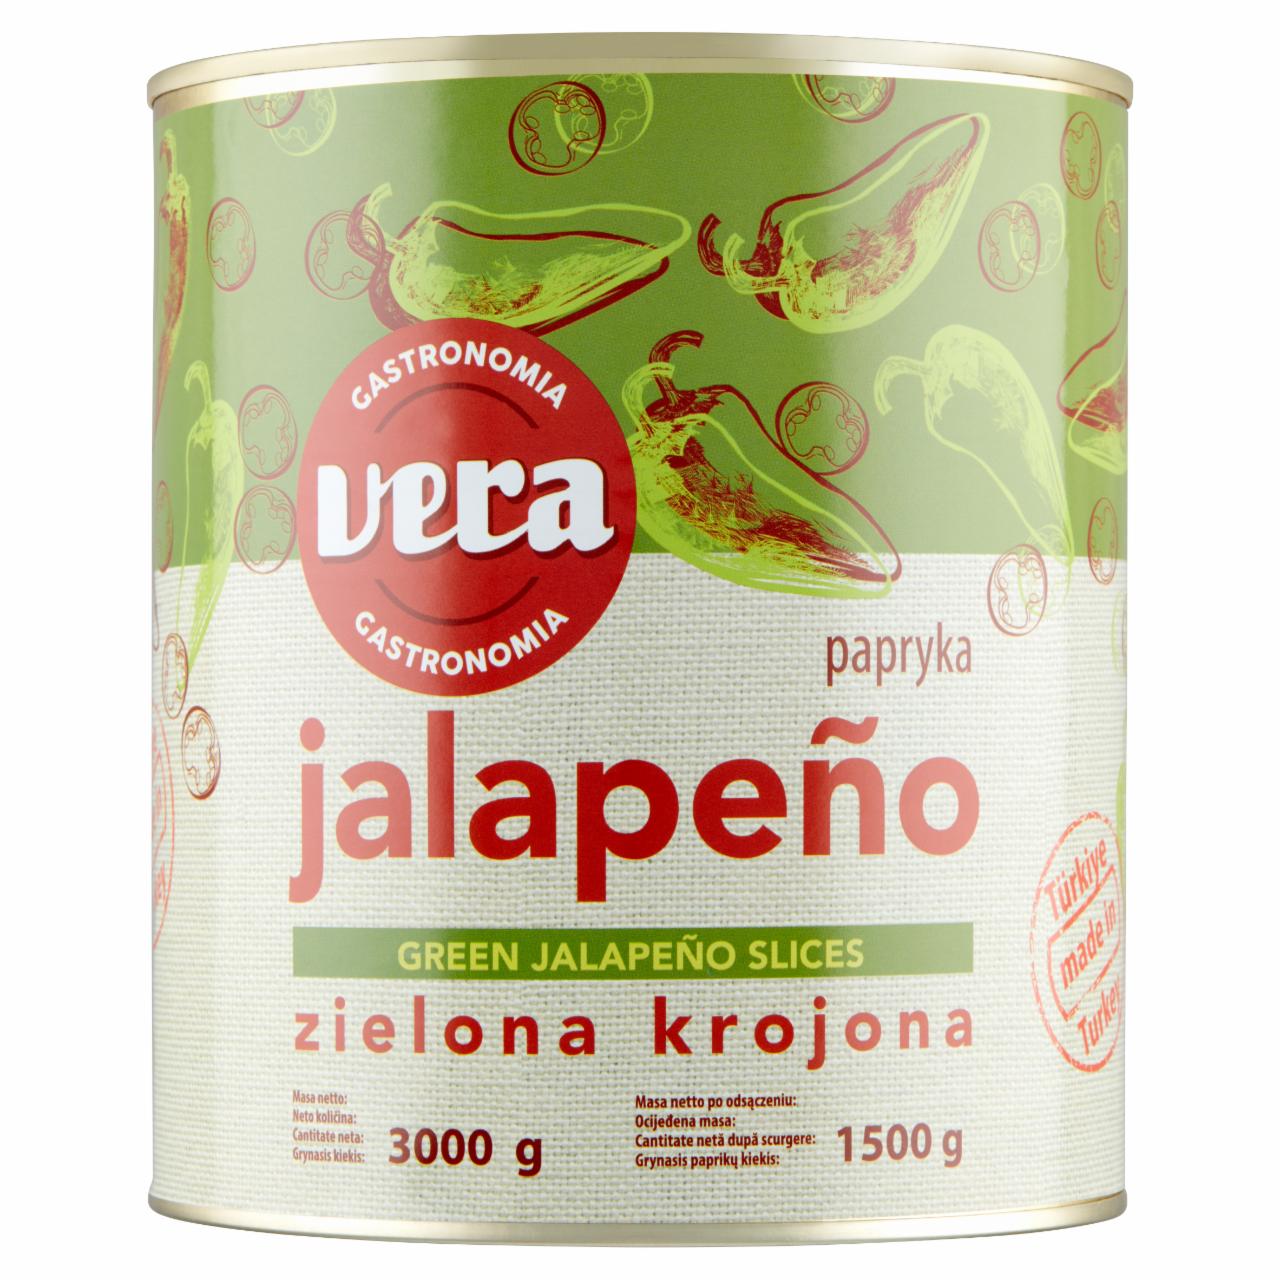 Zdjęcia - Vera Gastronomia Papryka Jalapeño zielona krojona 3000 g